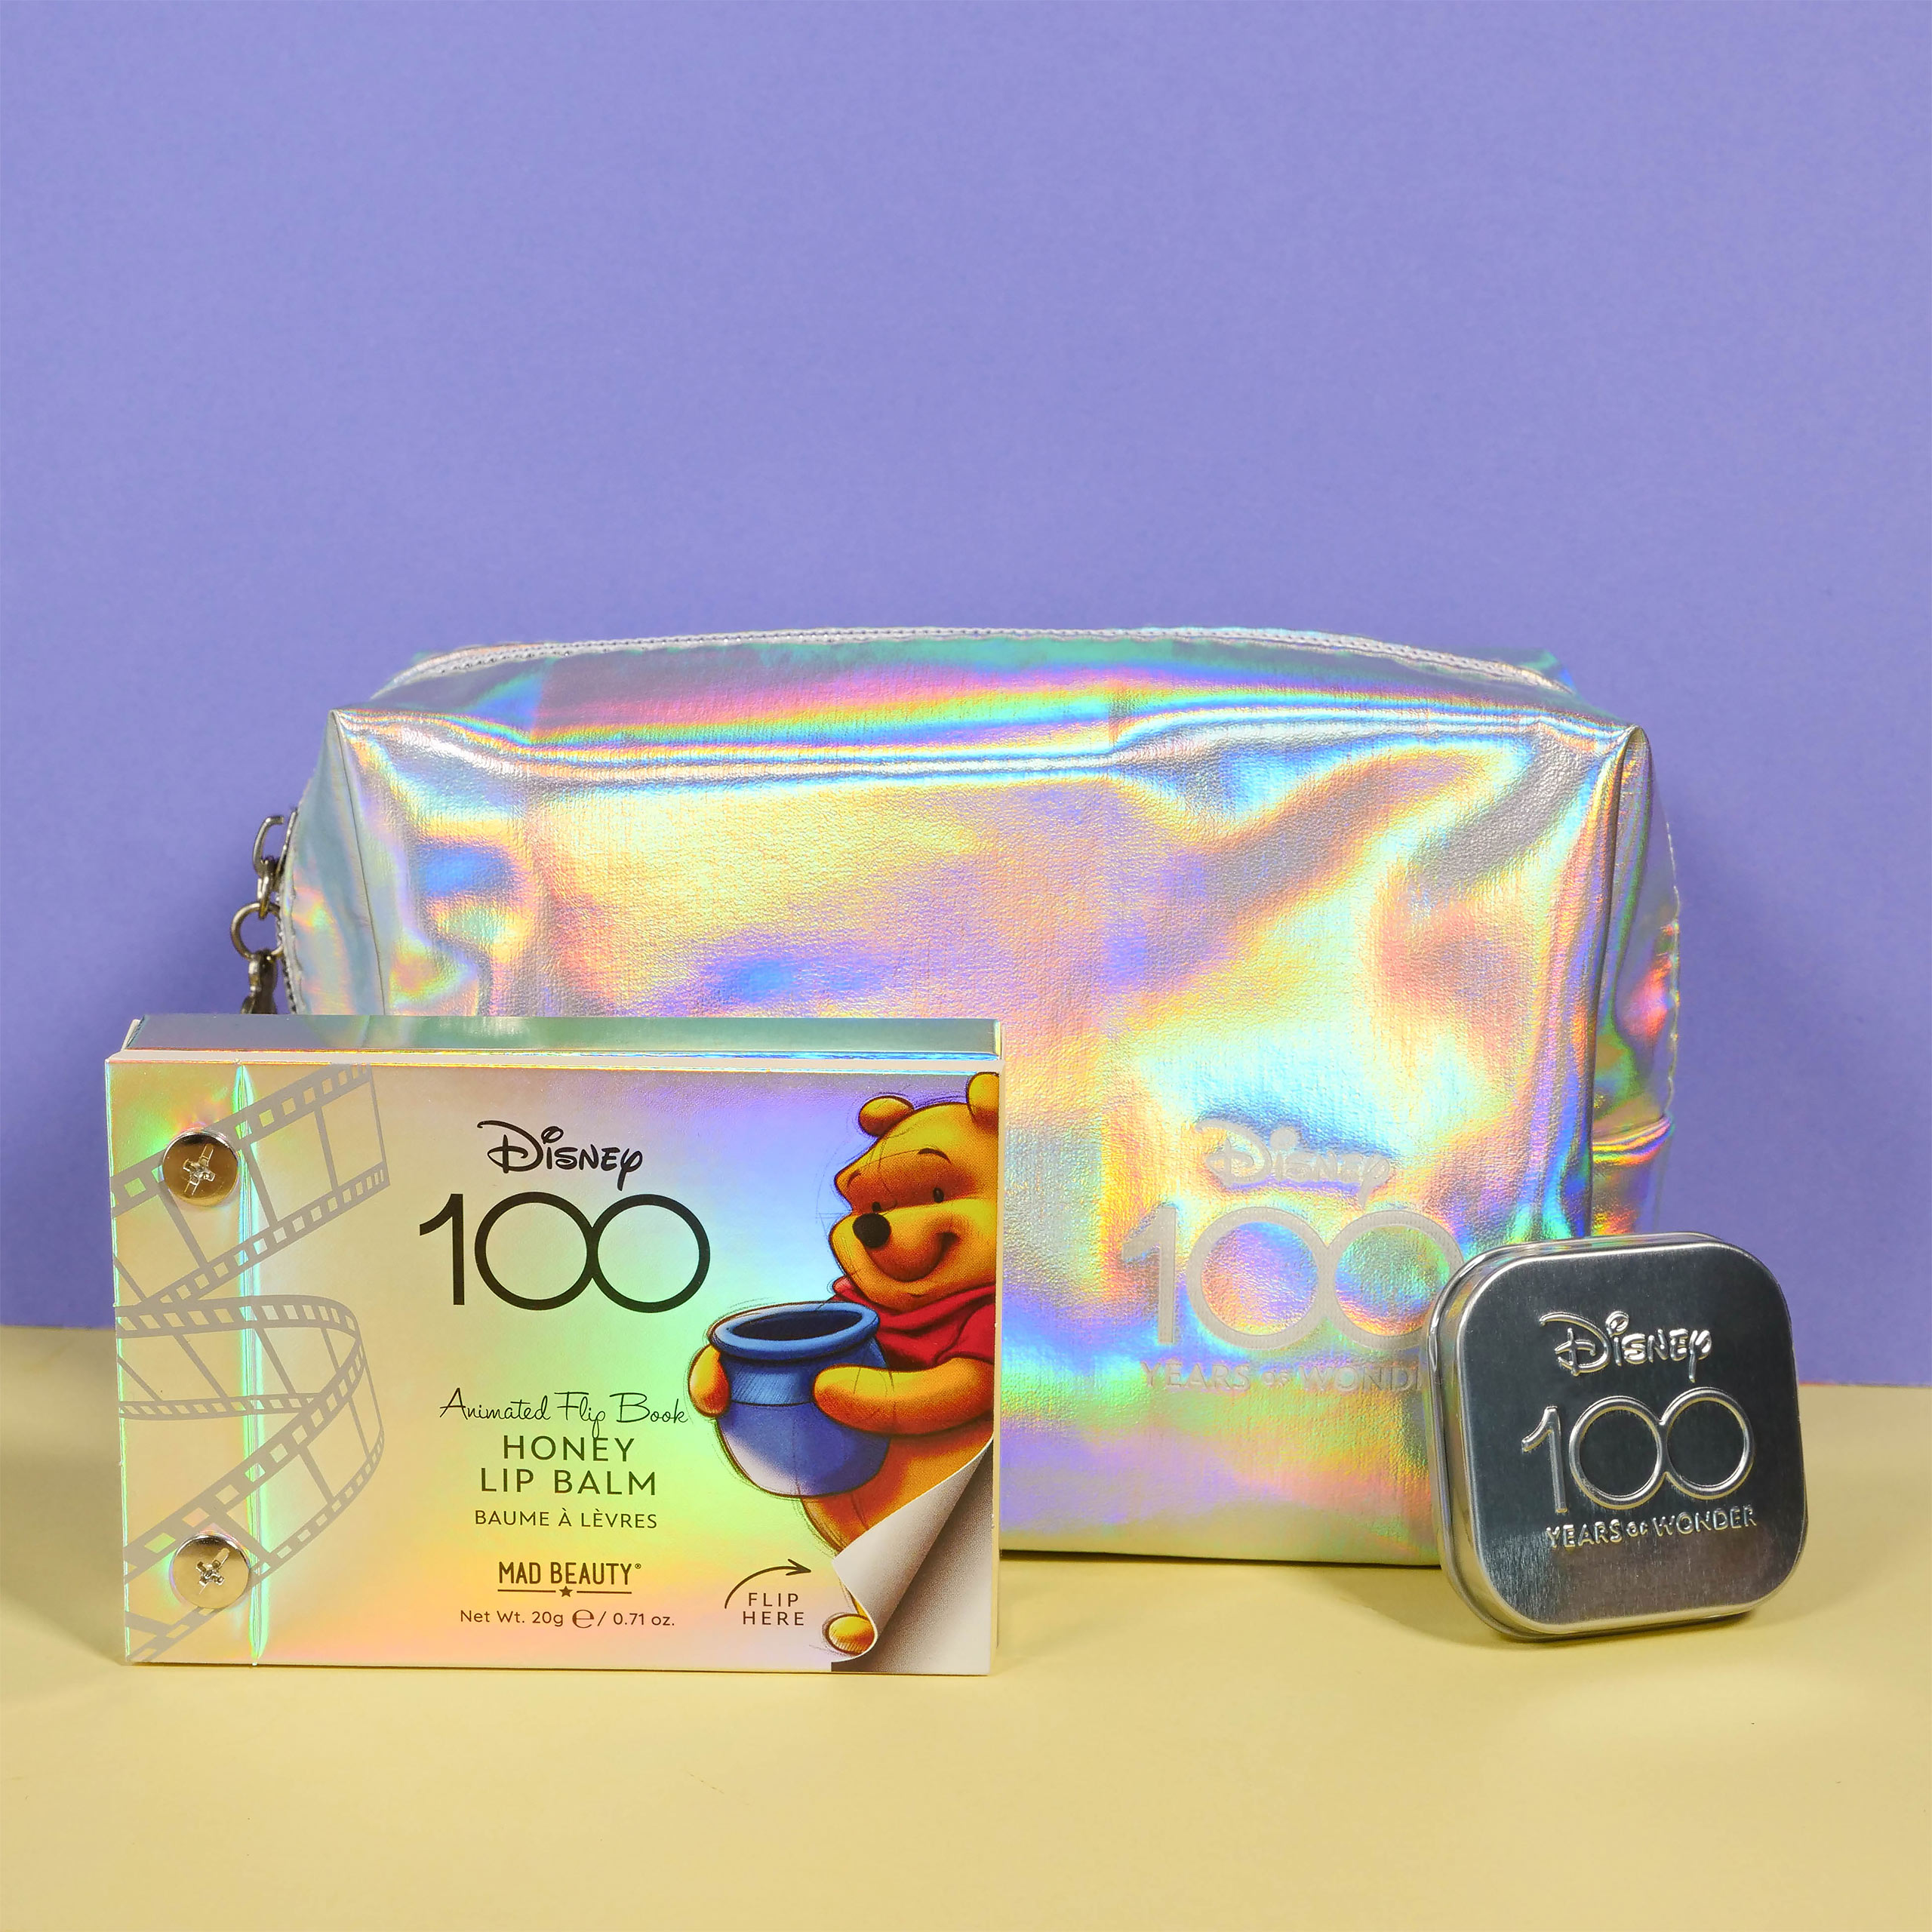 Disney - Disney 100 Cosmetic Bag